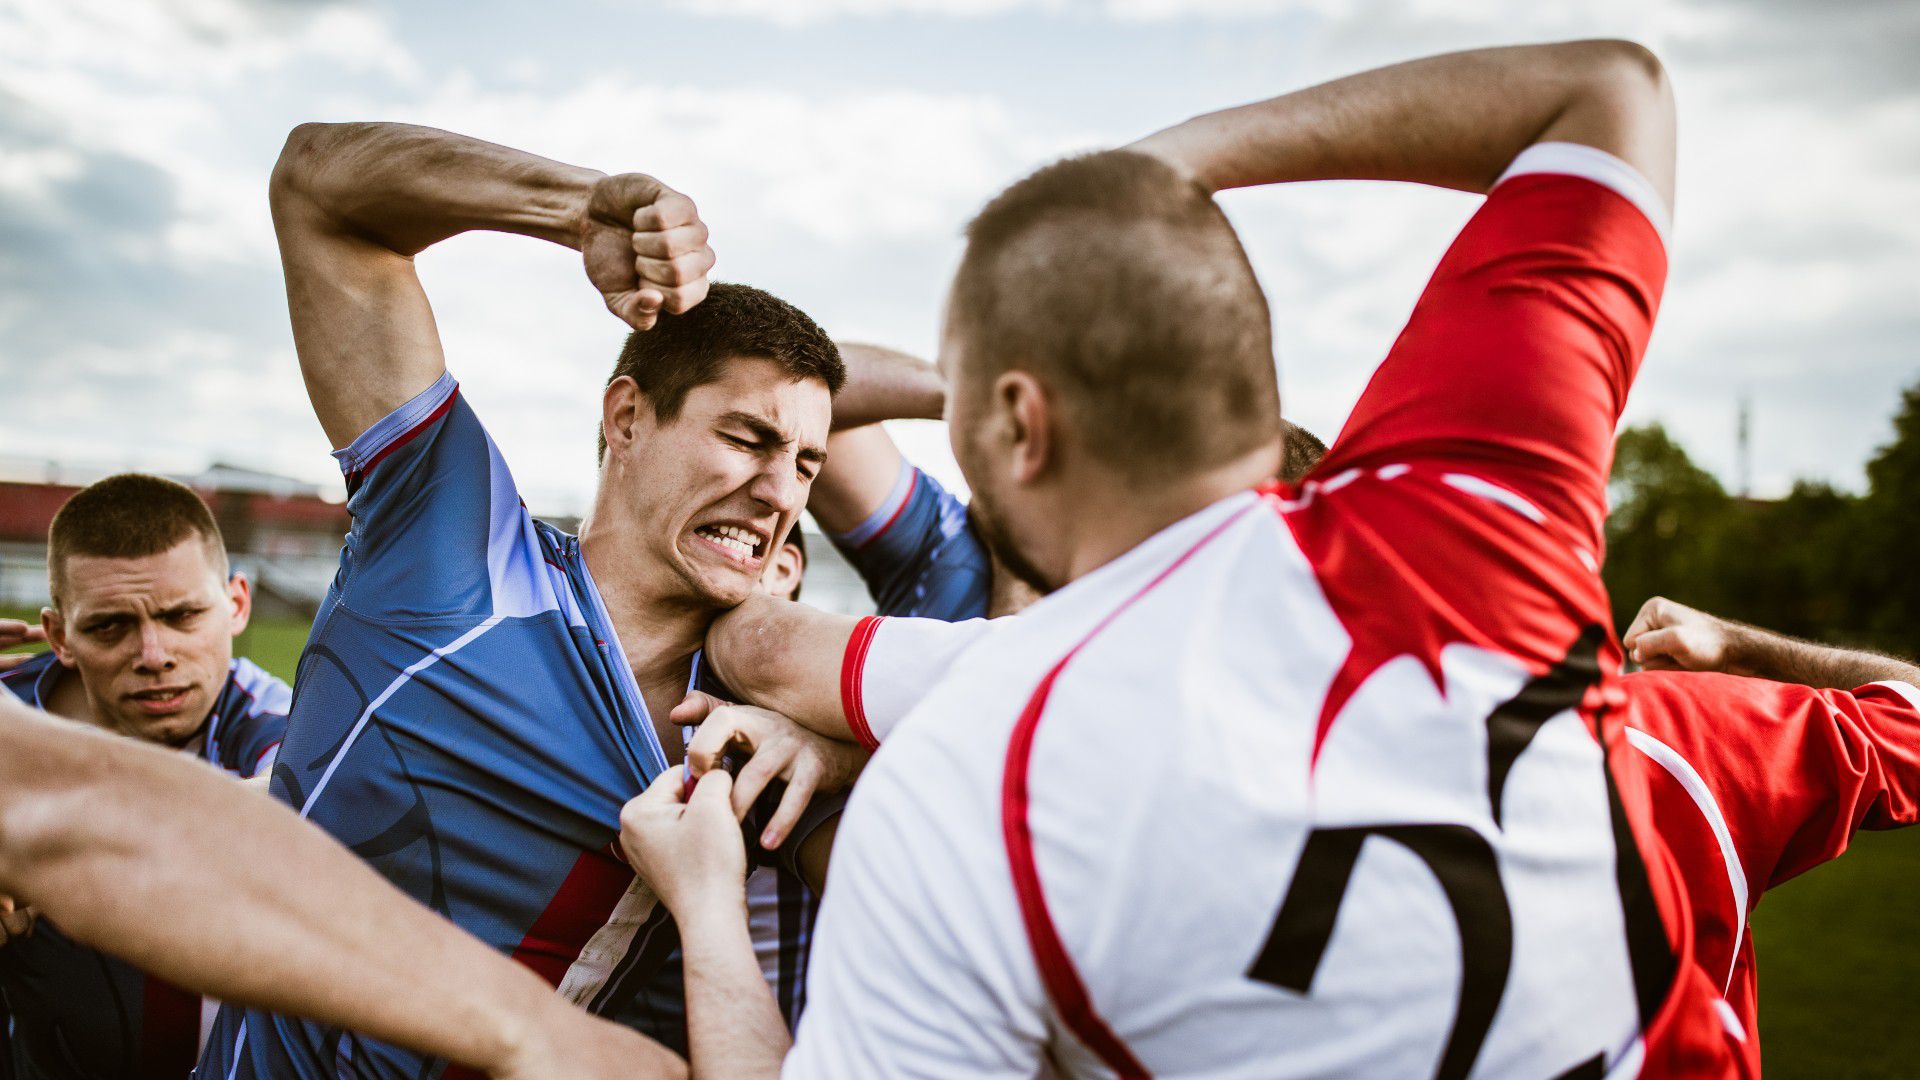 VIDEÓ: bunyó a focipályán, ököllel ütötték egymást a játékosok